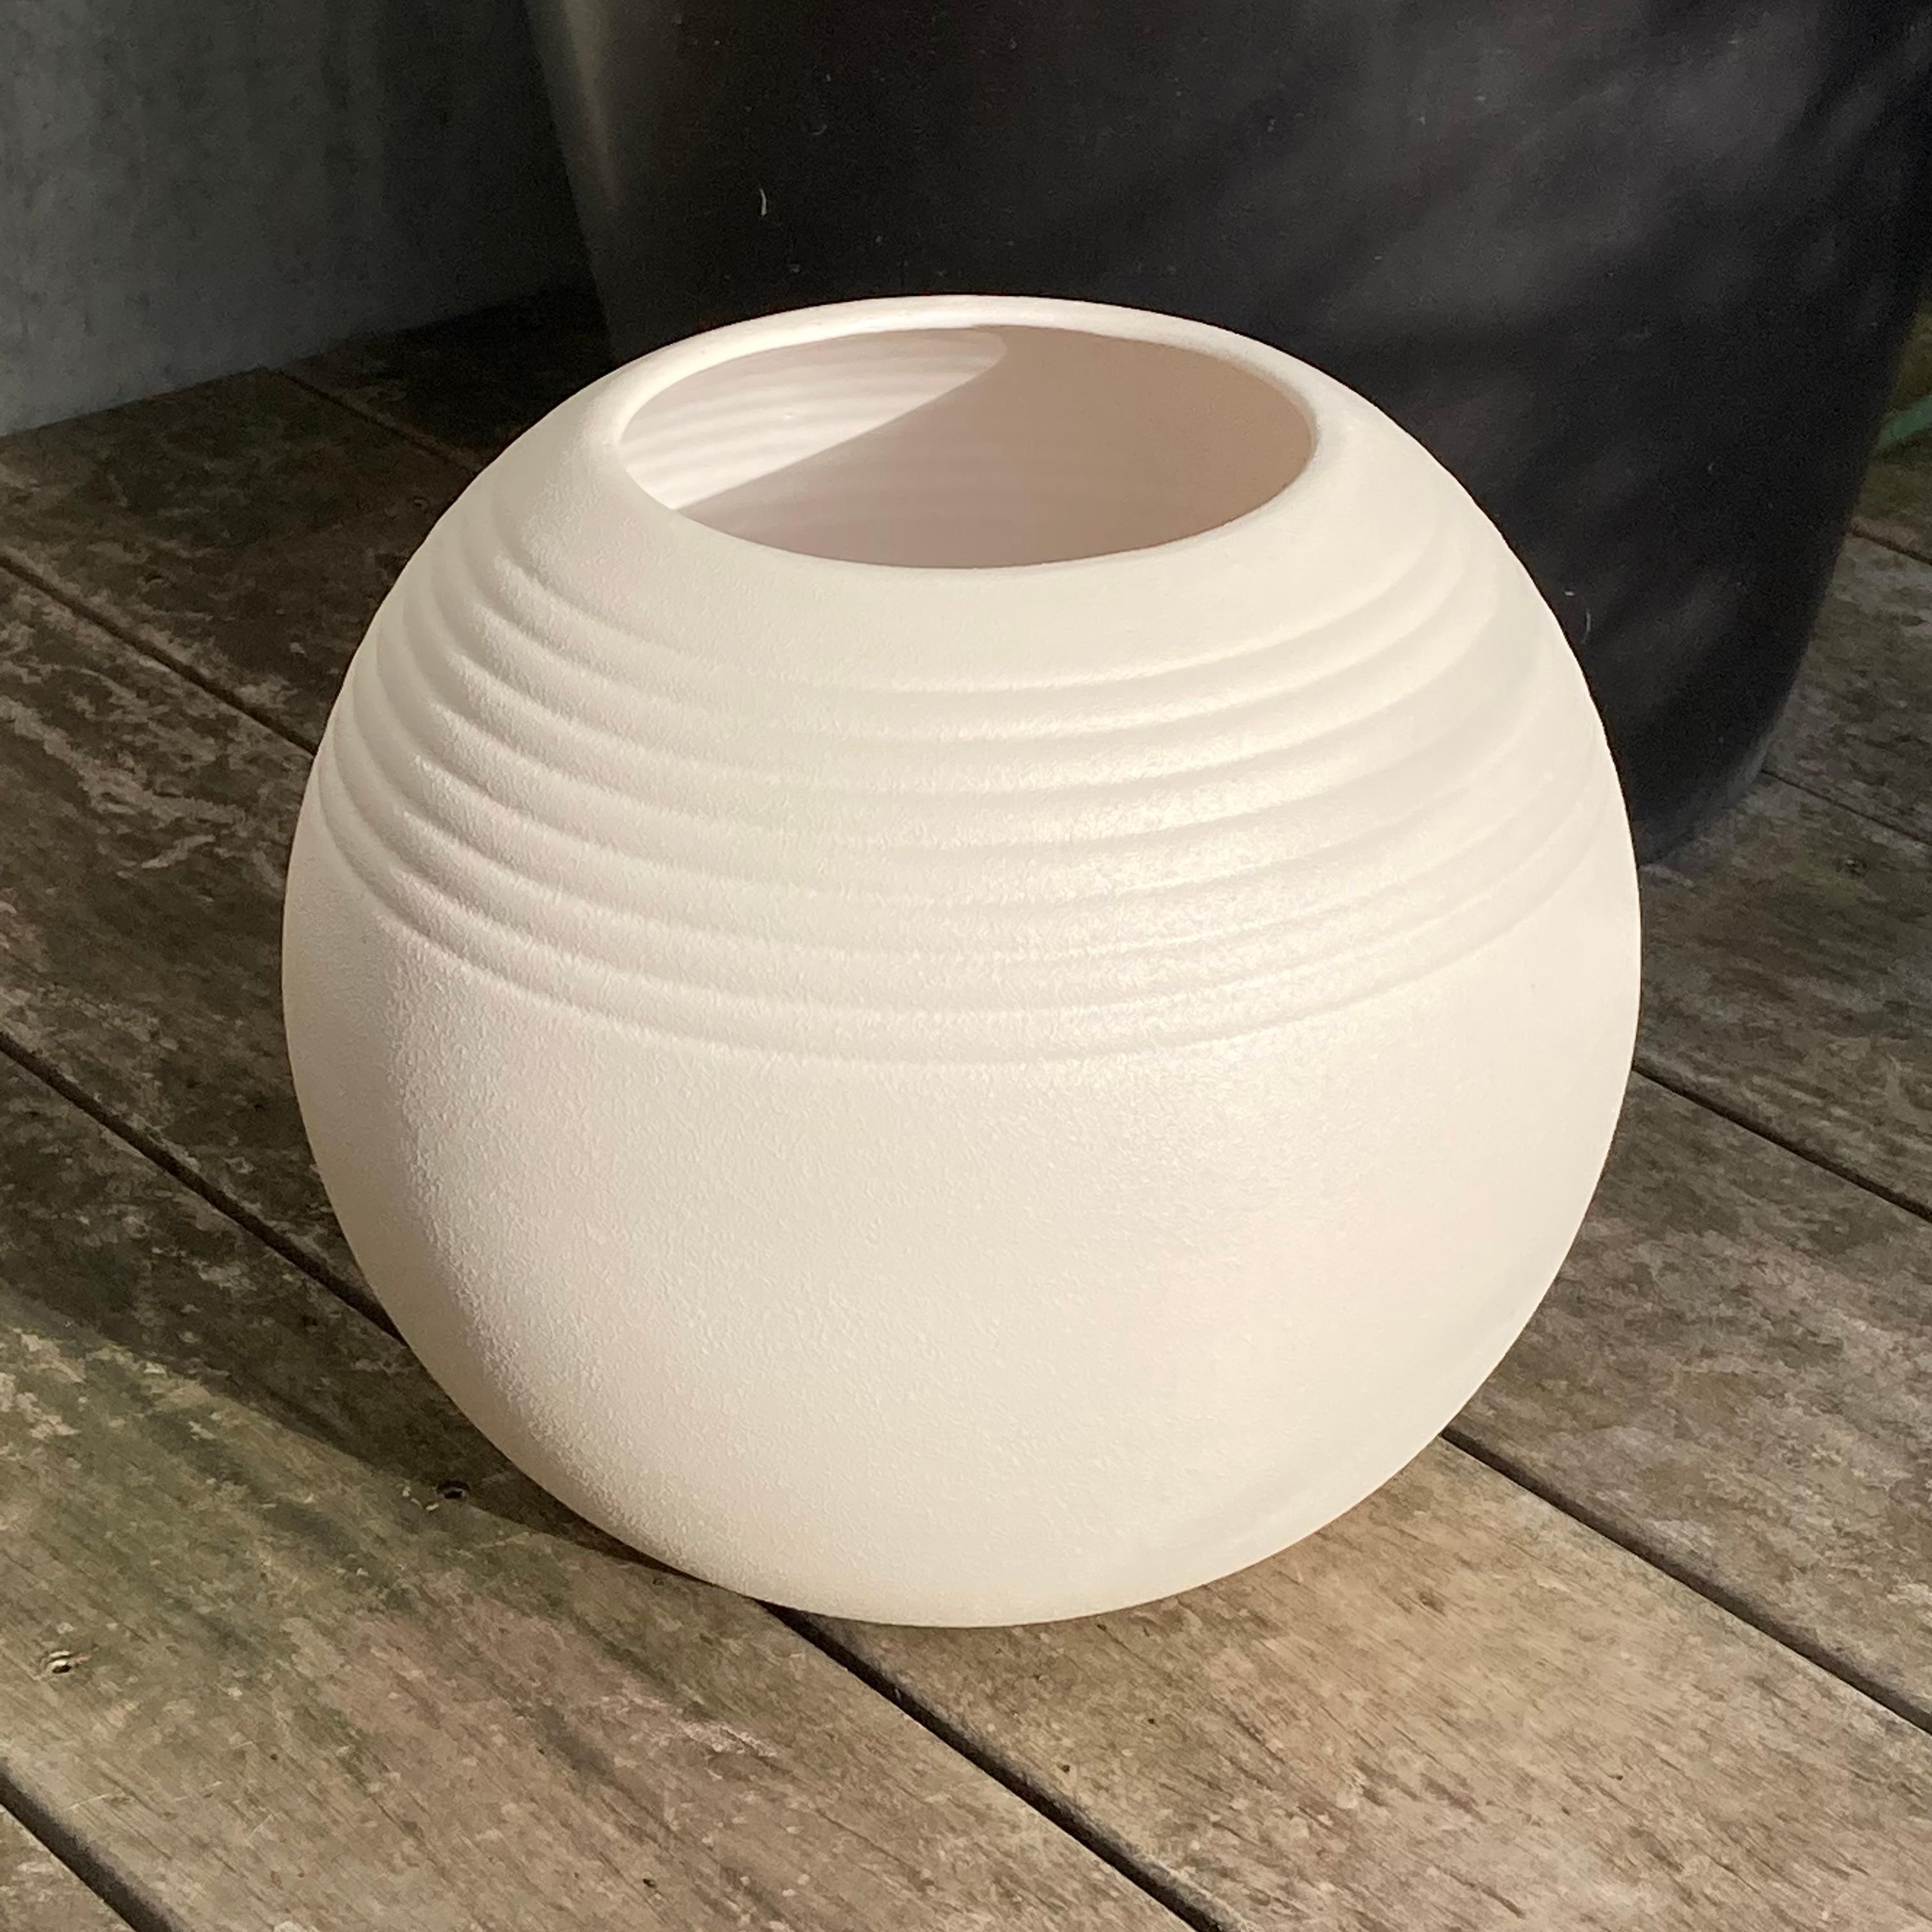 Ce vase en céramique authentique des années 1960 est tout simplement intemporel ! Avec sa forme et son décor minimalistes, il s'agit non seulement d'une pièce de collection moderne du milieu du siècle, mais aussi d'un fantastique objet de décoration